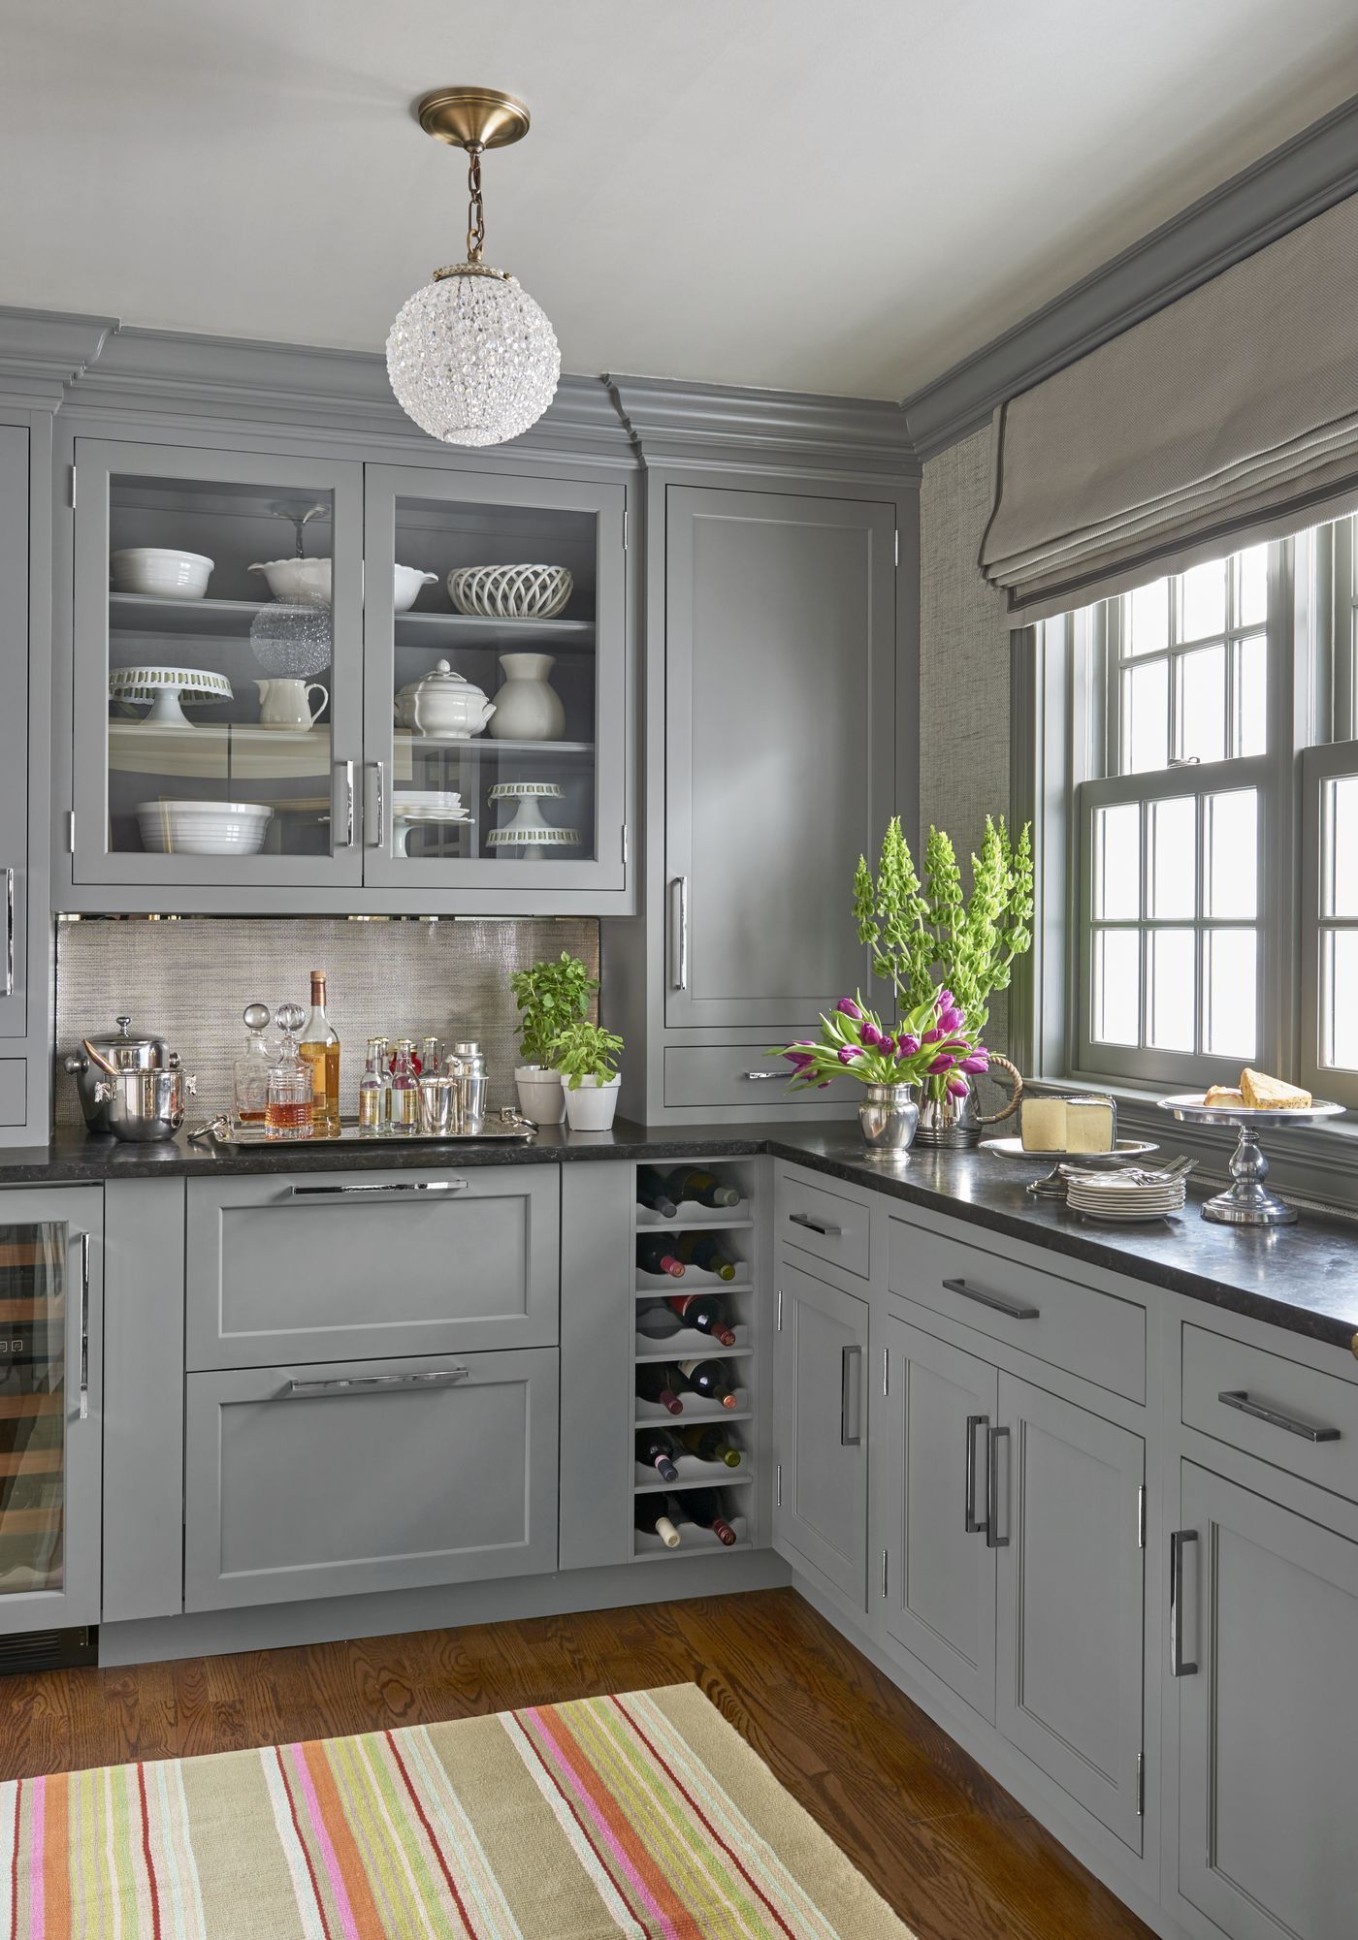 4 Gray Kitchens ideas  kitchen design, grey kitchen cabinets  - grey kitchen ideas pinterest